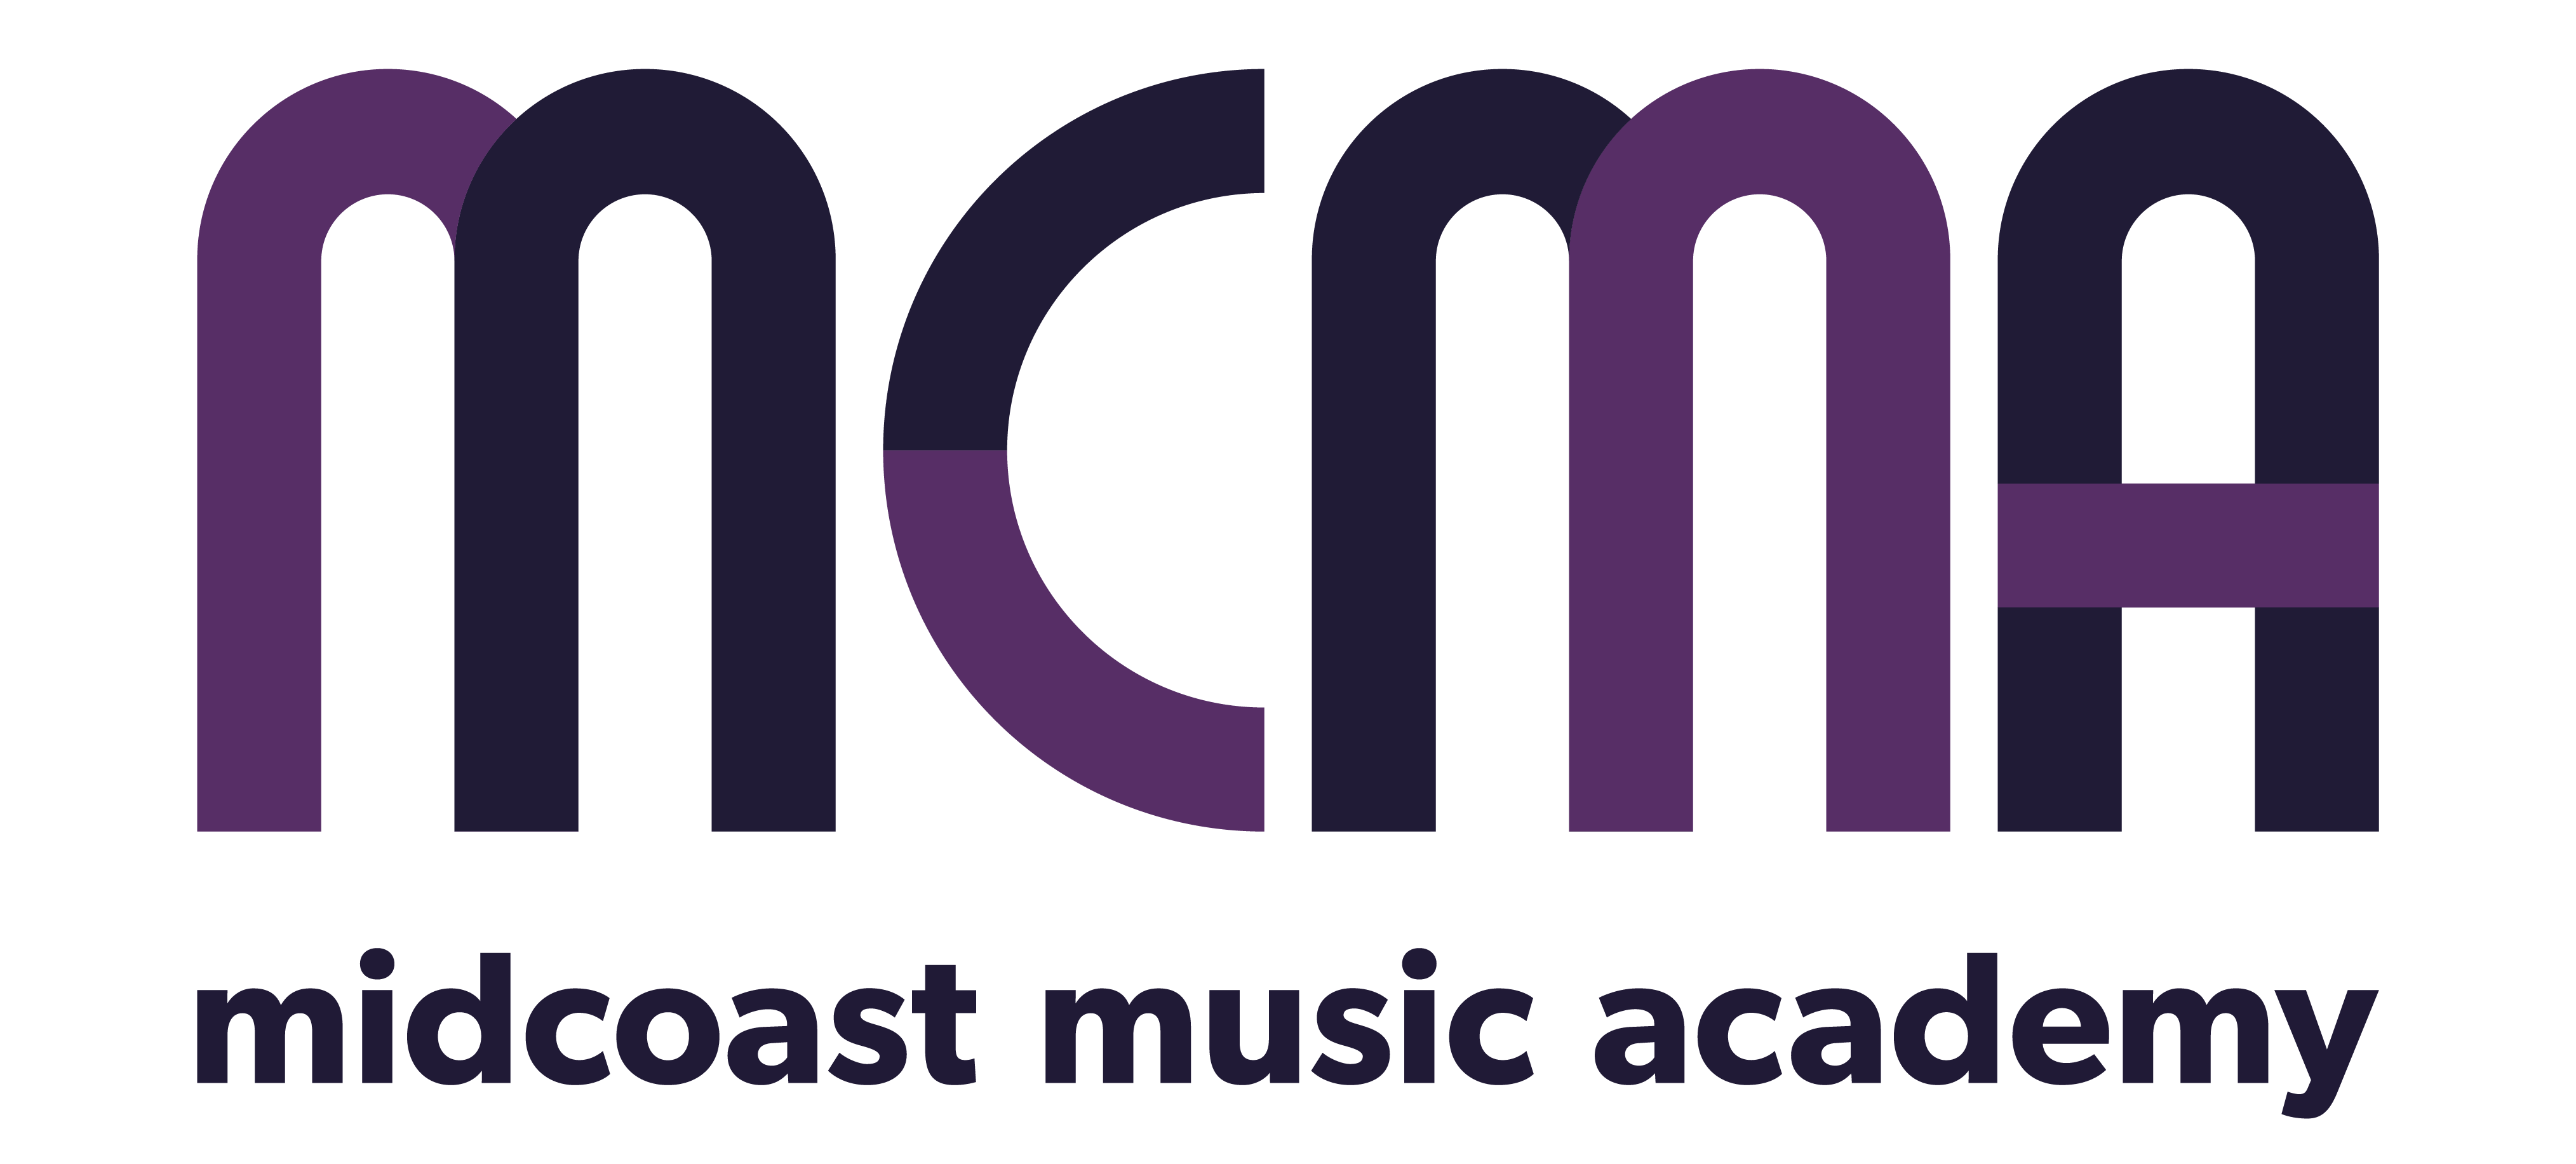 www.midcoastmusicacademy.com